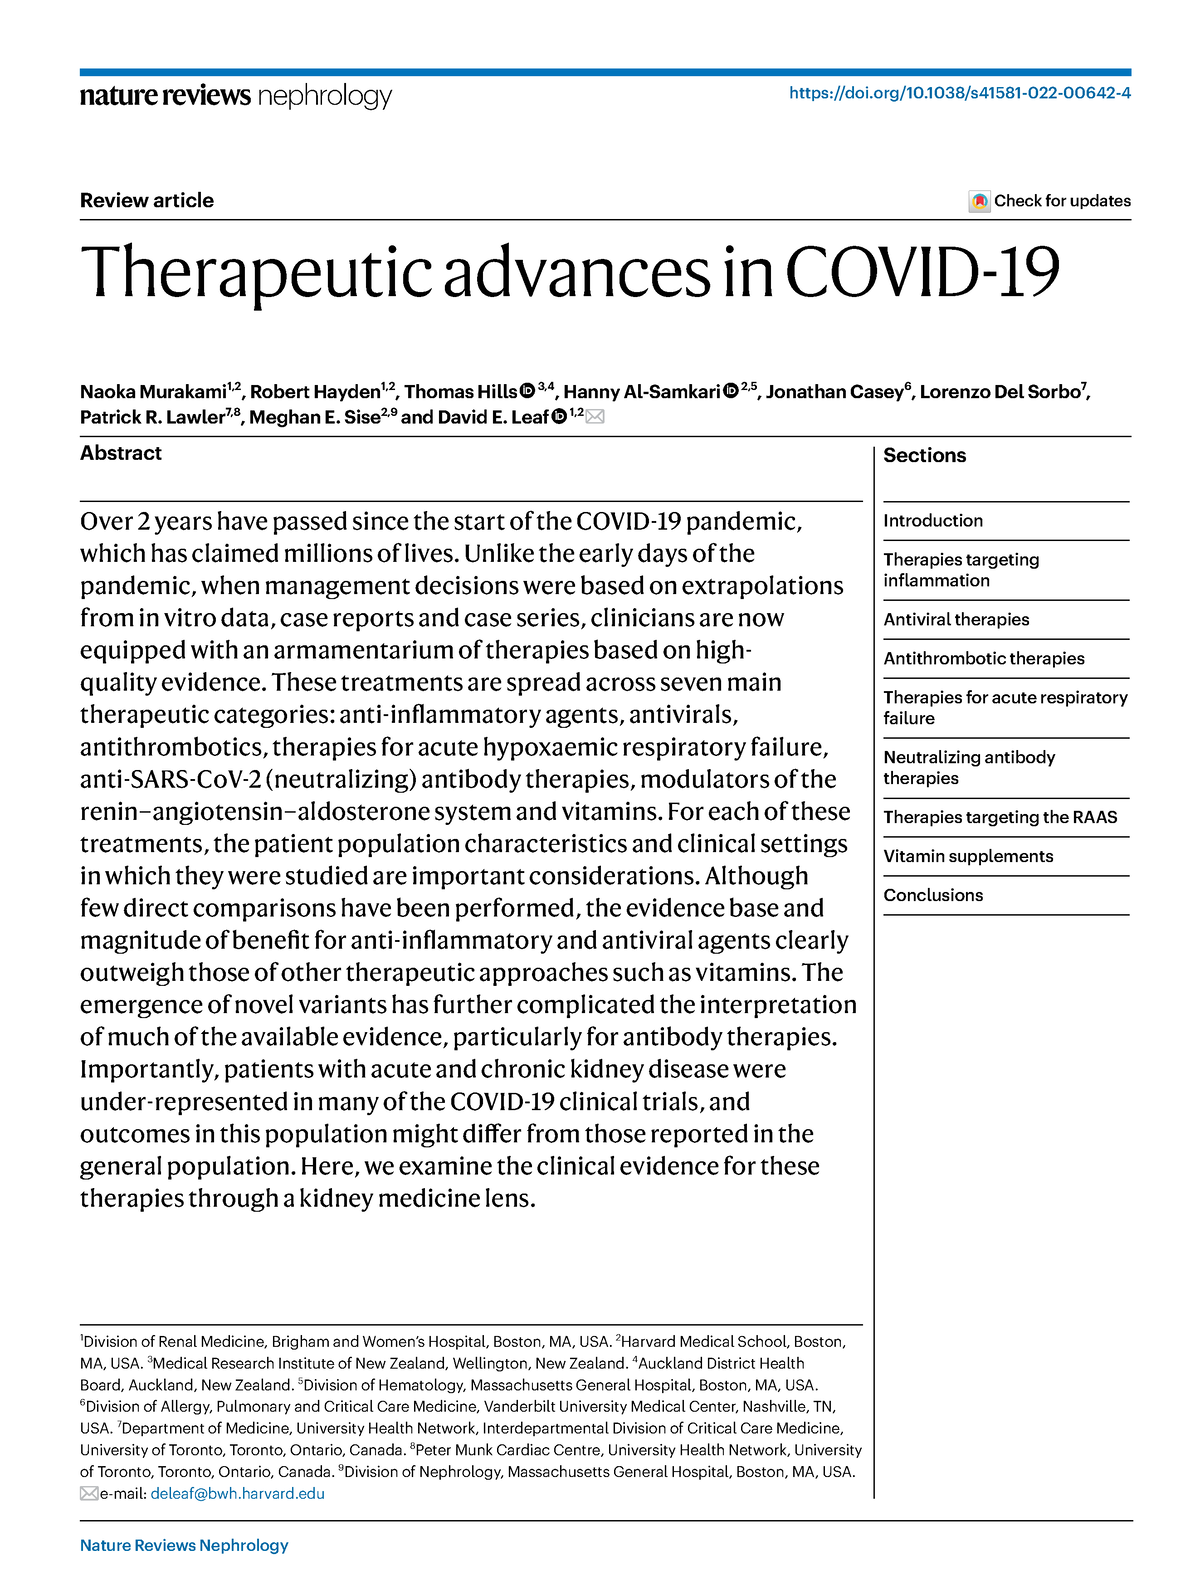 Terapeutica para Covid 19 - nature reviews nephrology doi/10.1038 ...